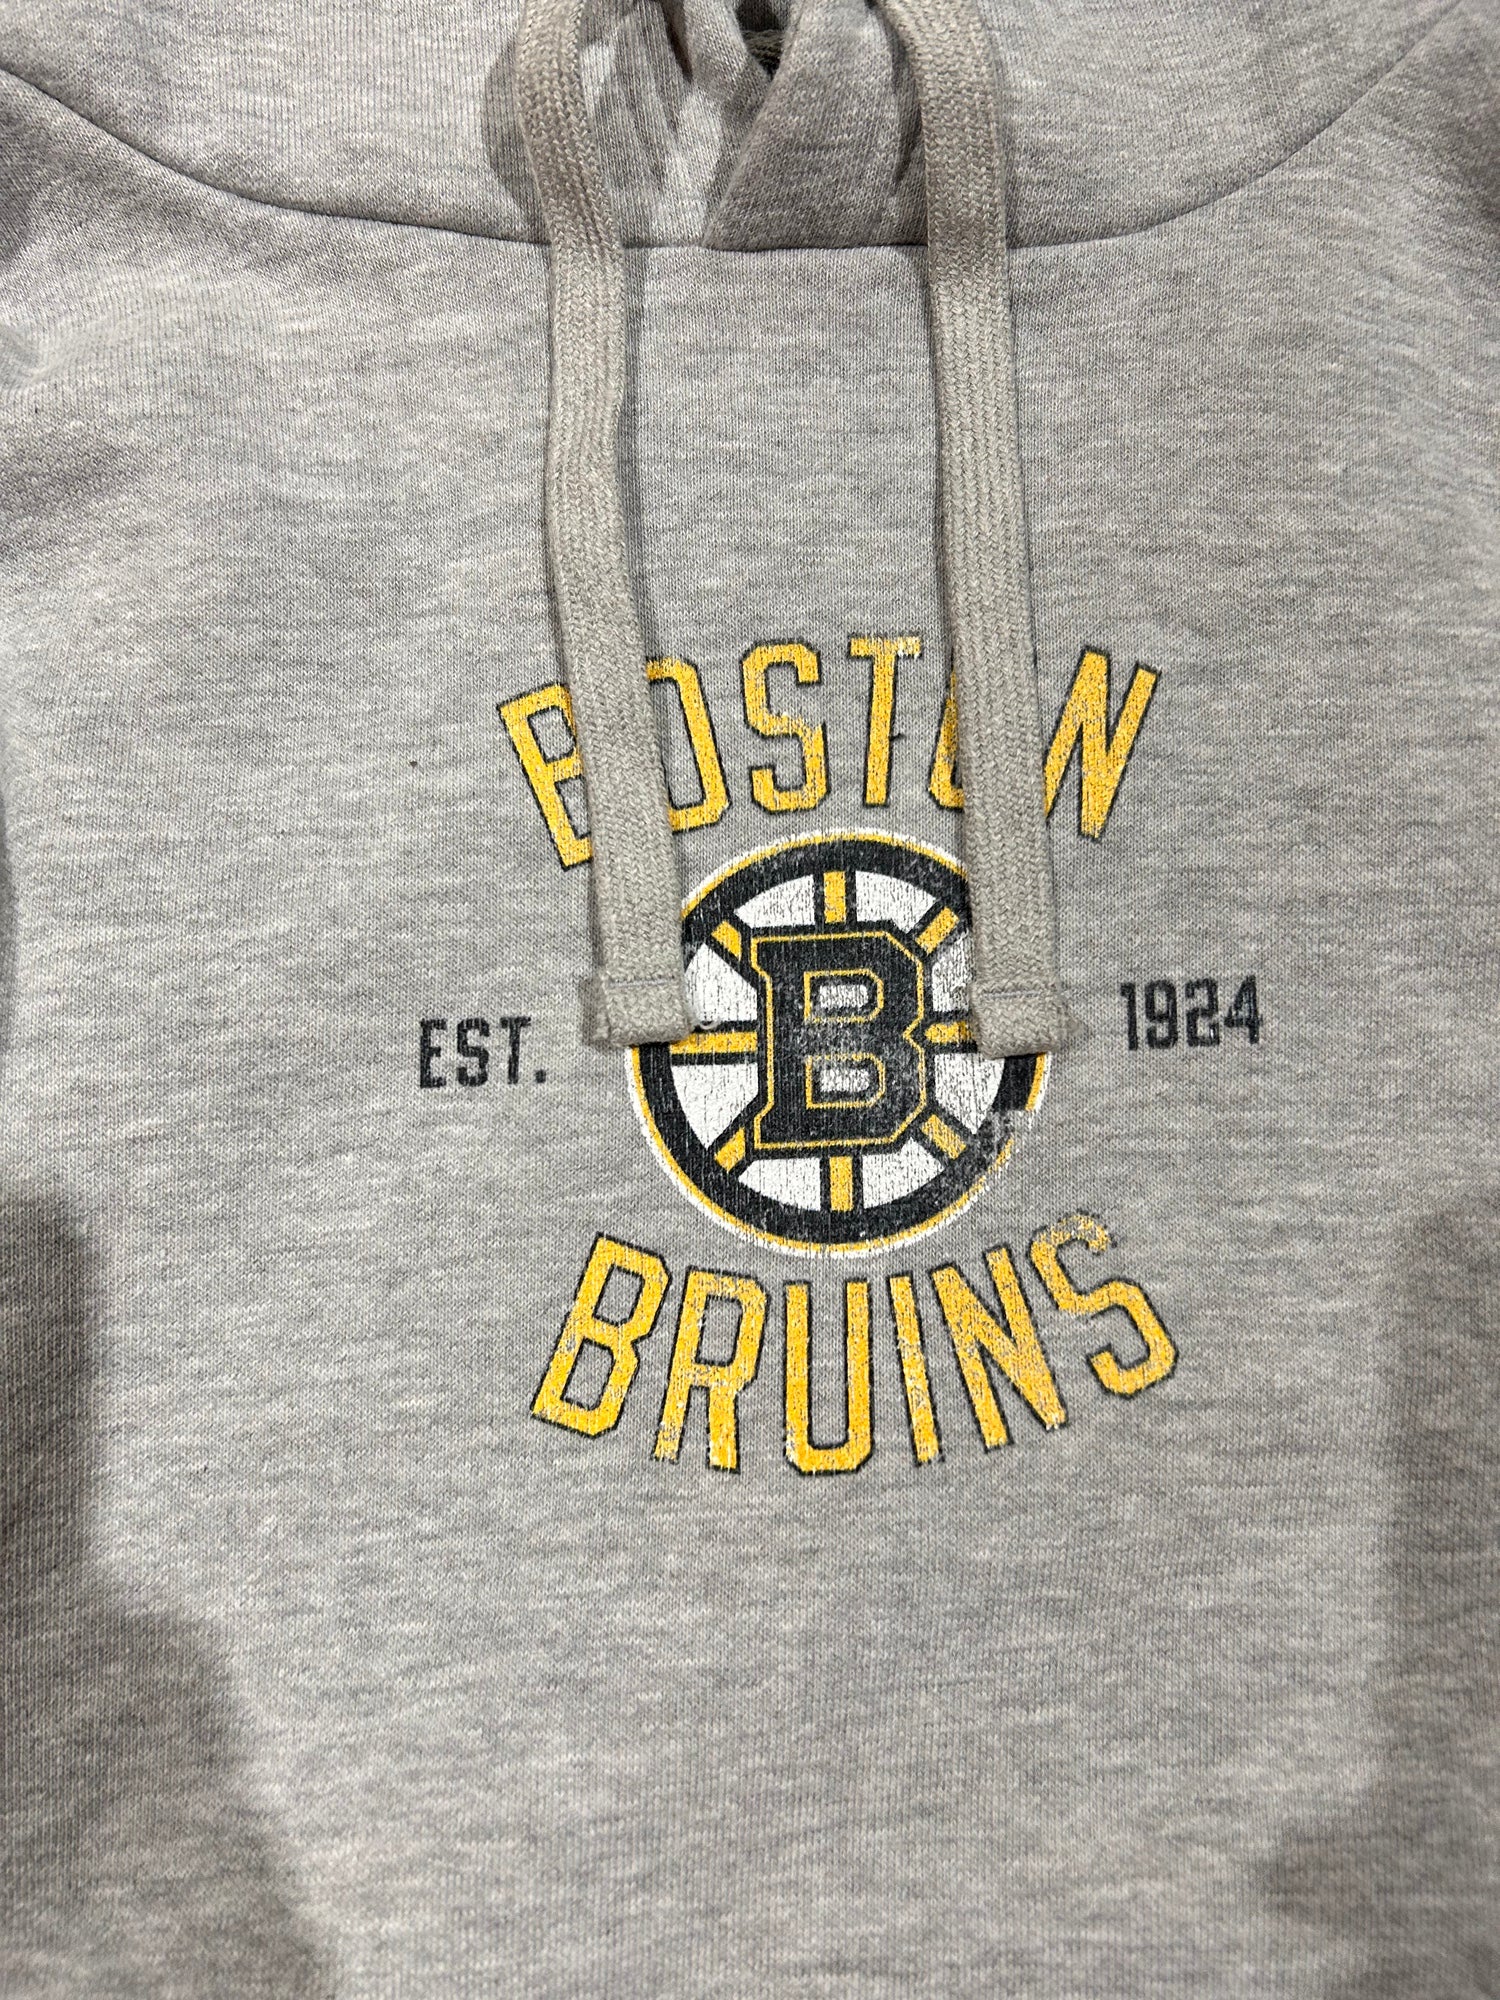 Boston Bruins Hooded Sweatshirt - Vermont Bruins Hoodie